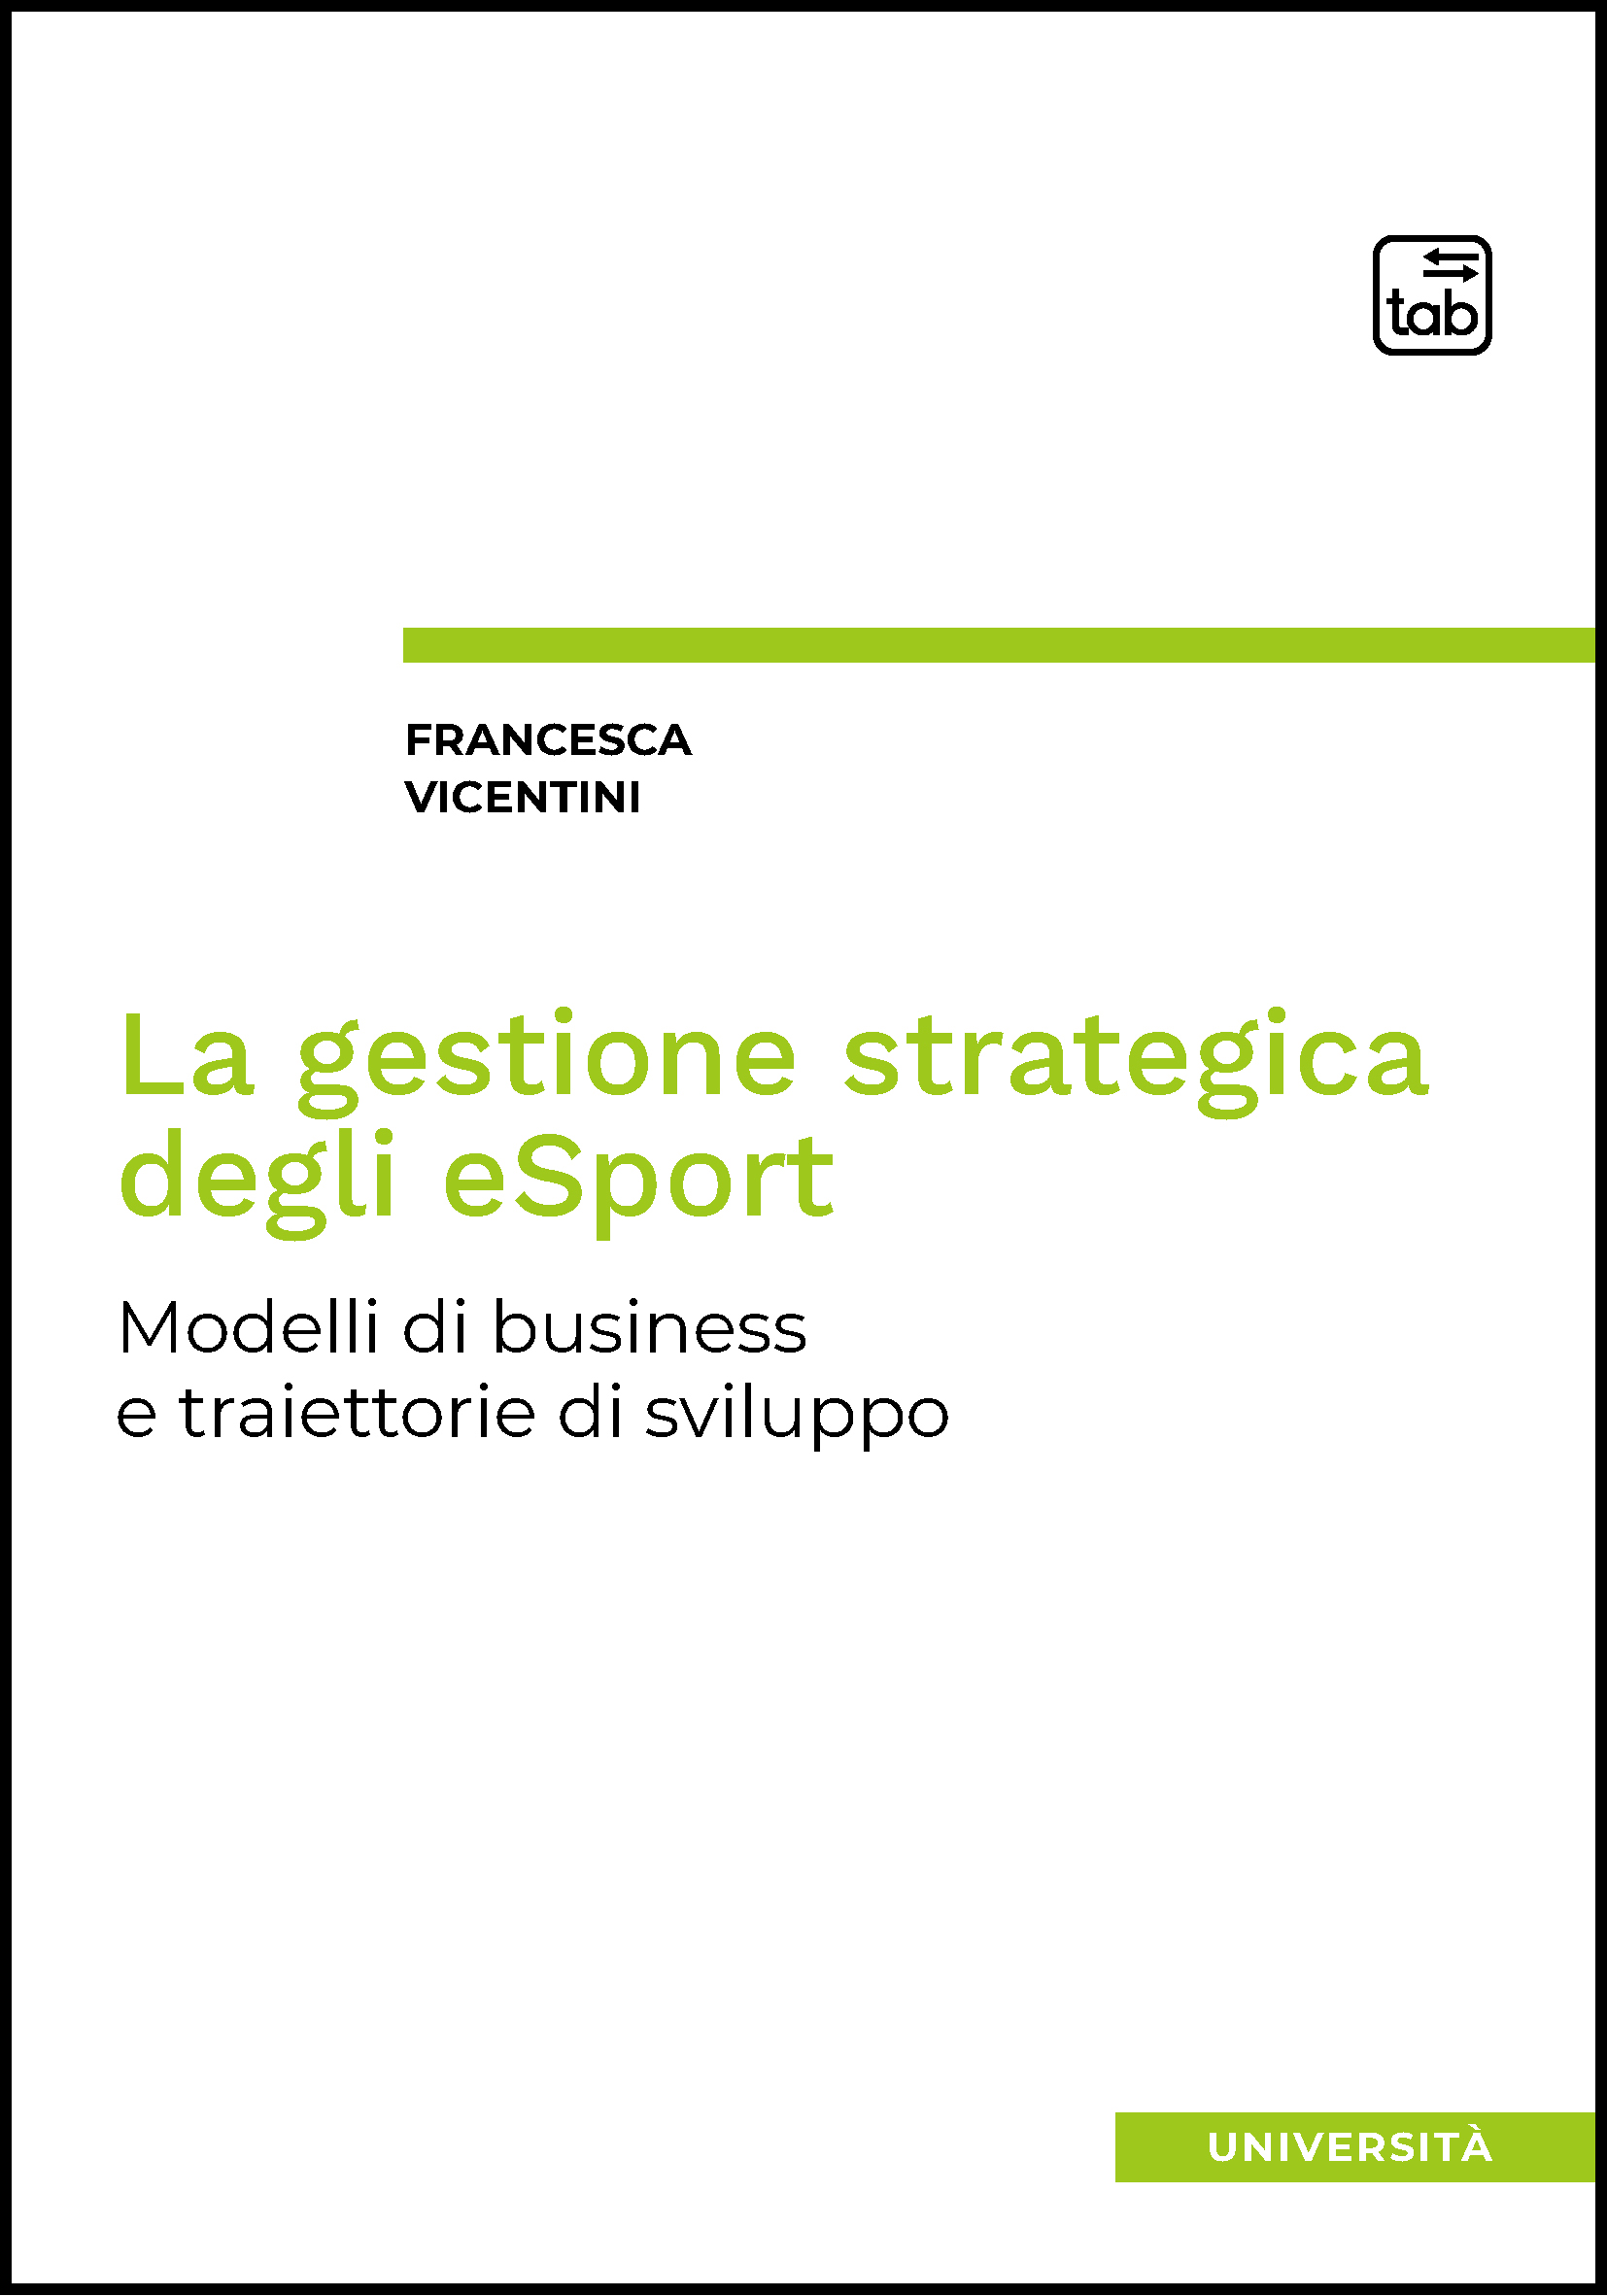 La gestione strategica degli eSport